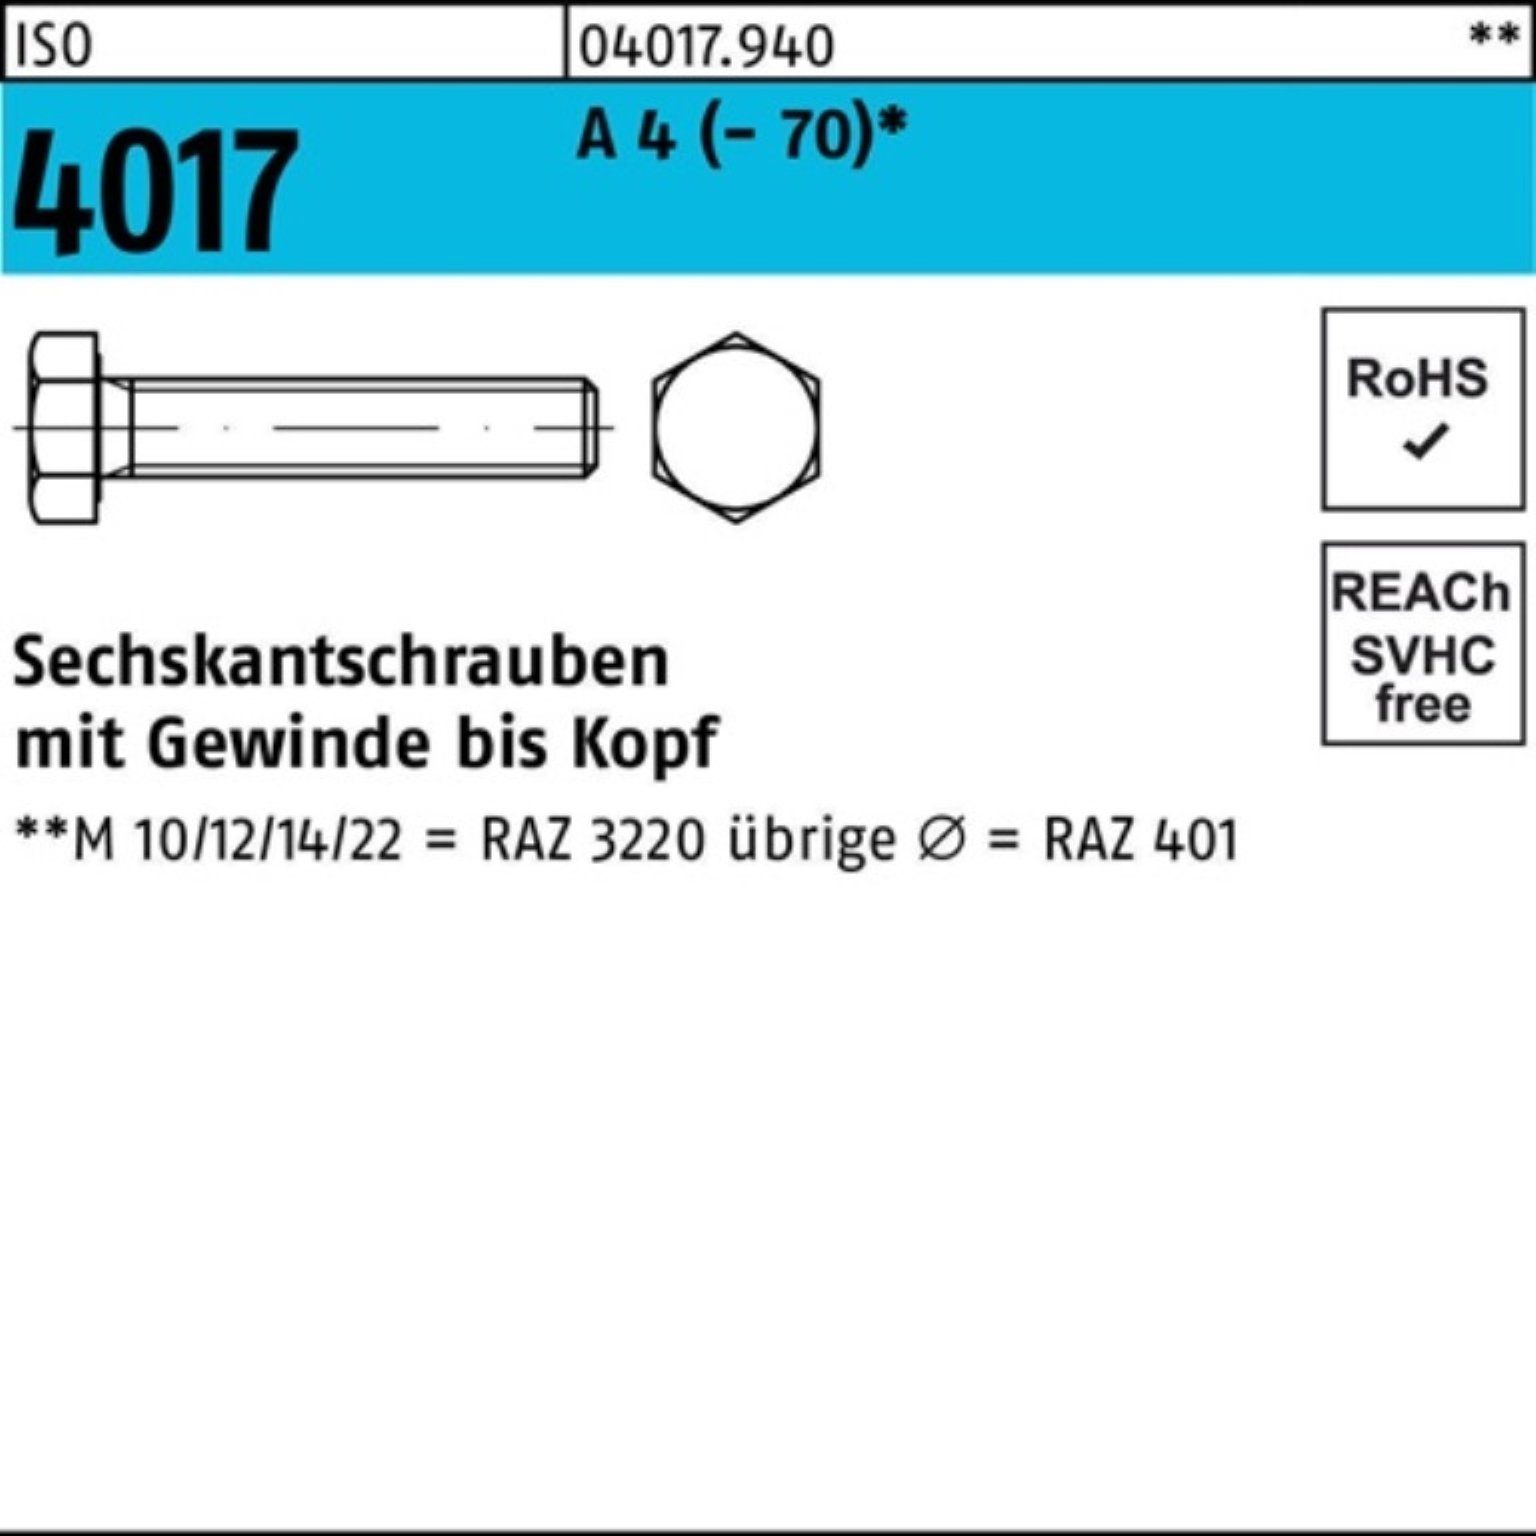 Bufab Sechskantschraube 100er Pack Sechskantschraube 1 M24x VG 4017 70 Stück A 4 I (70) ISO